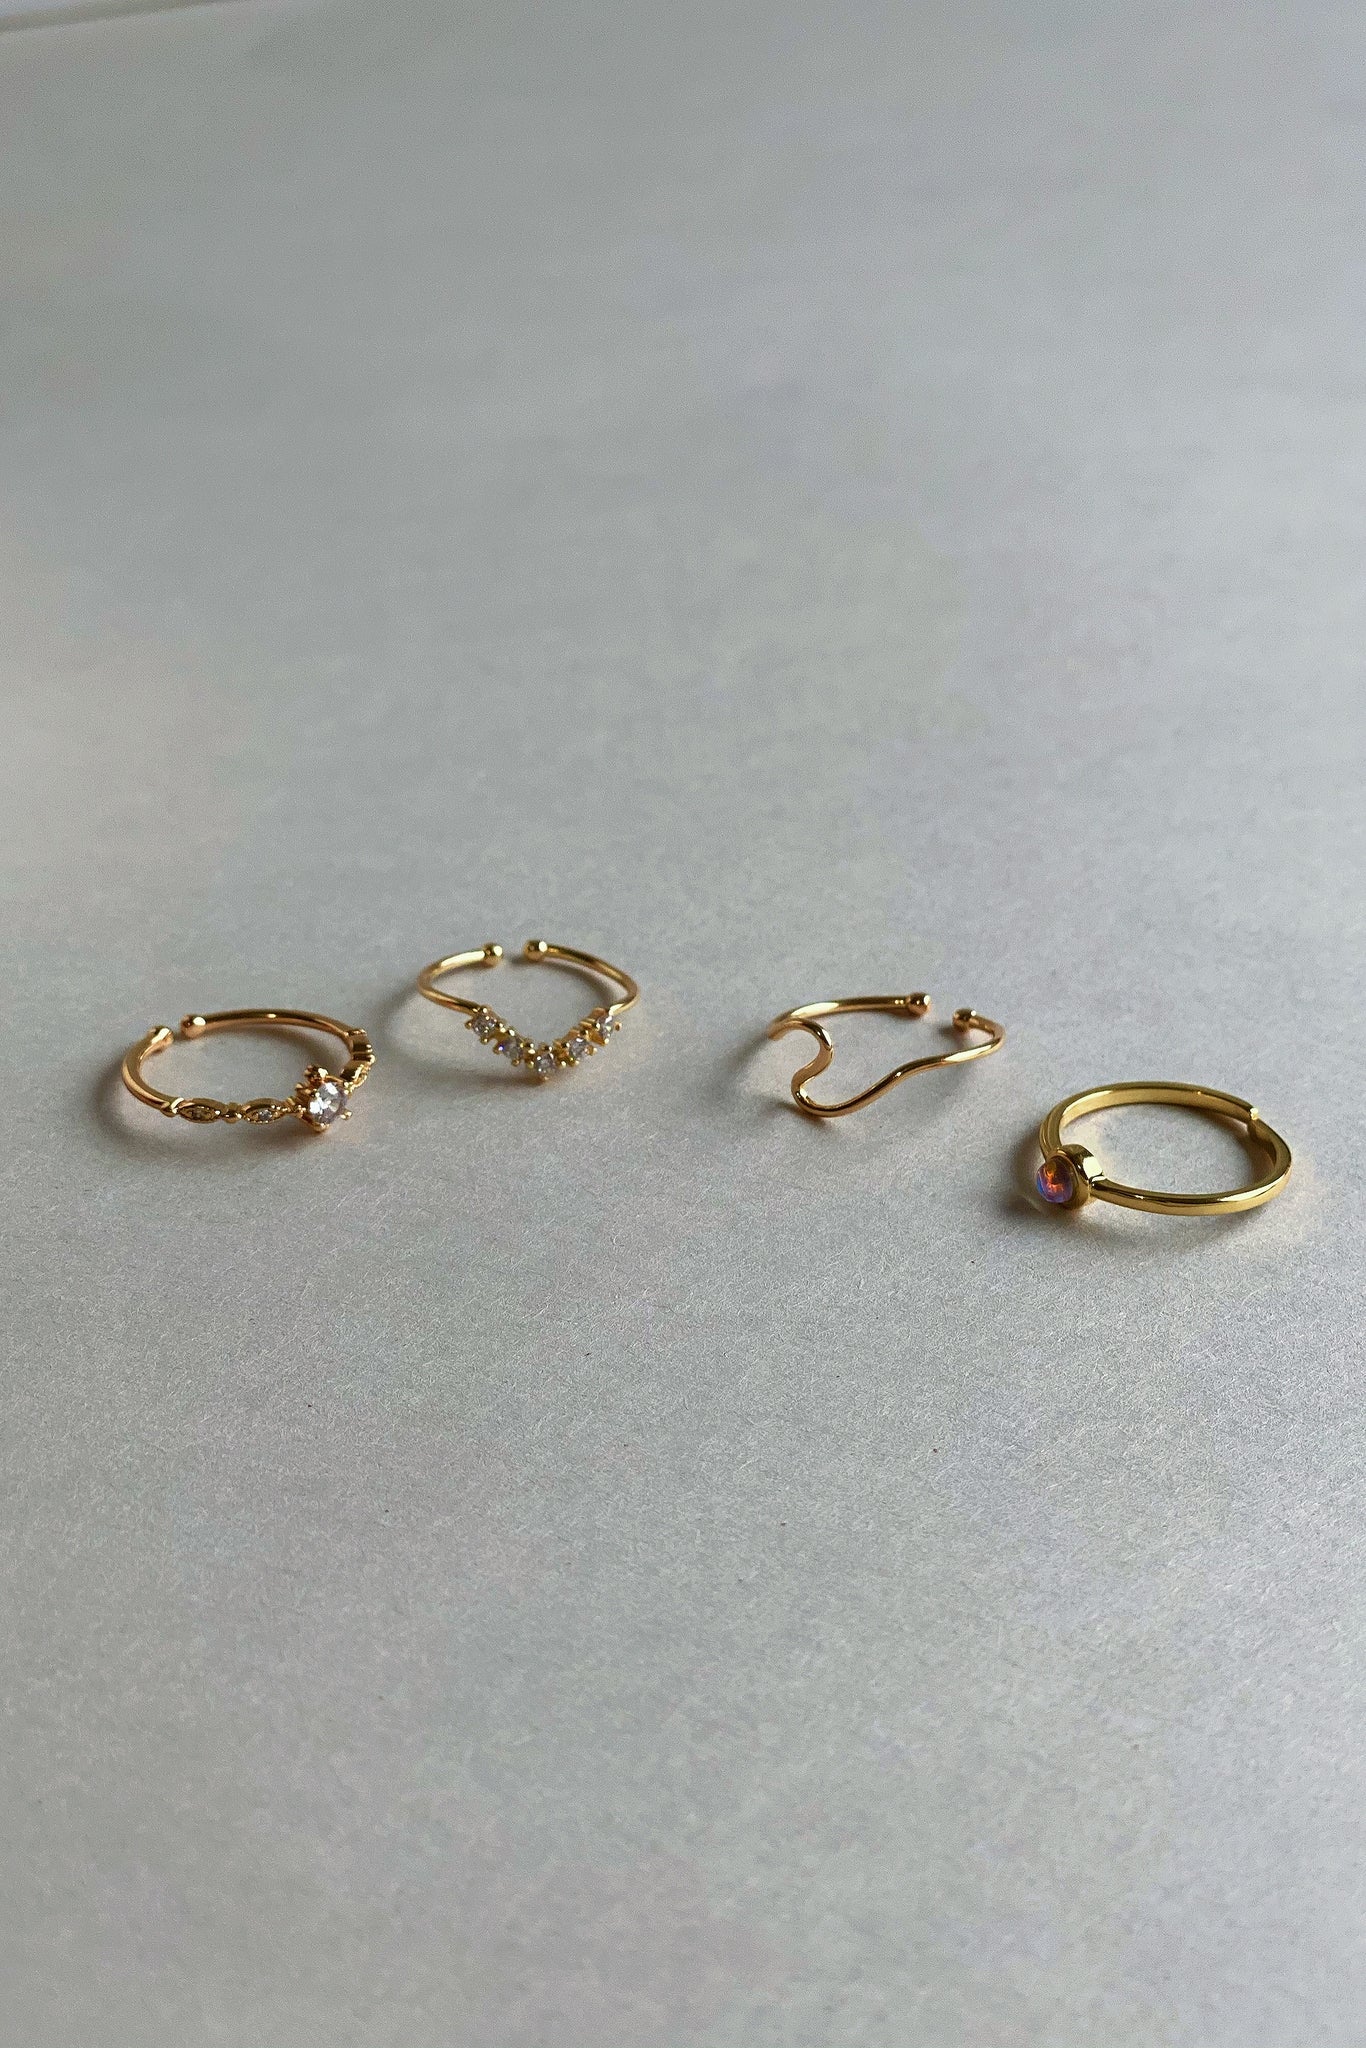 Minimalist Opal Ring